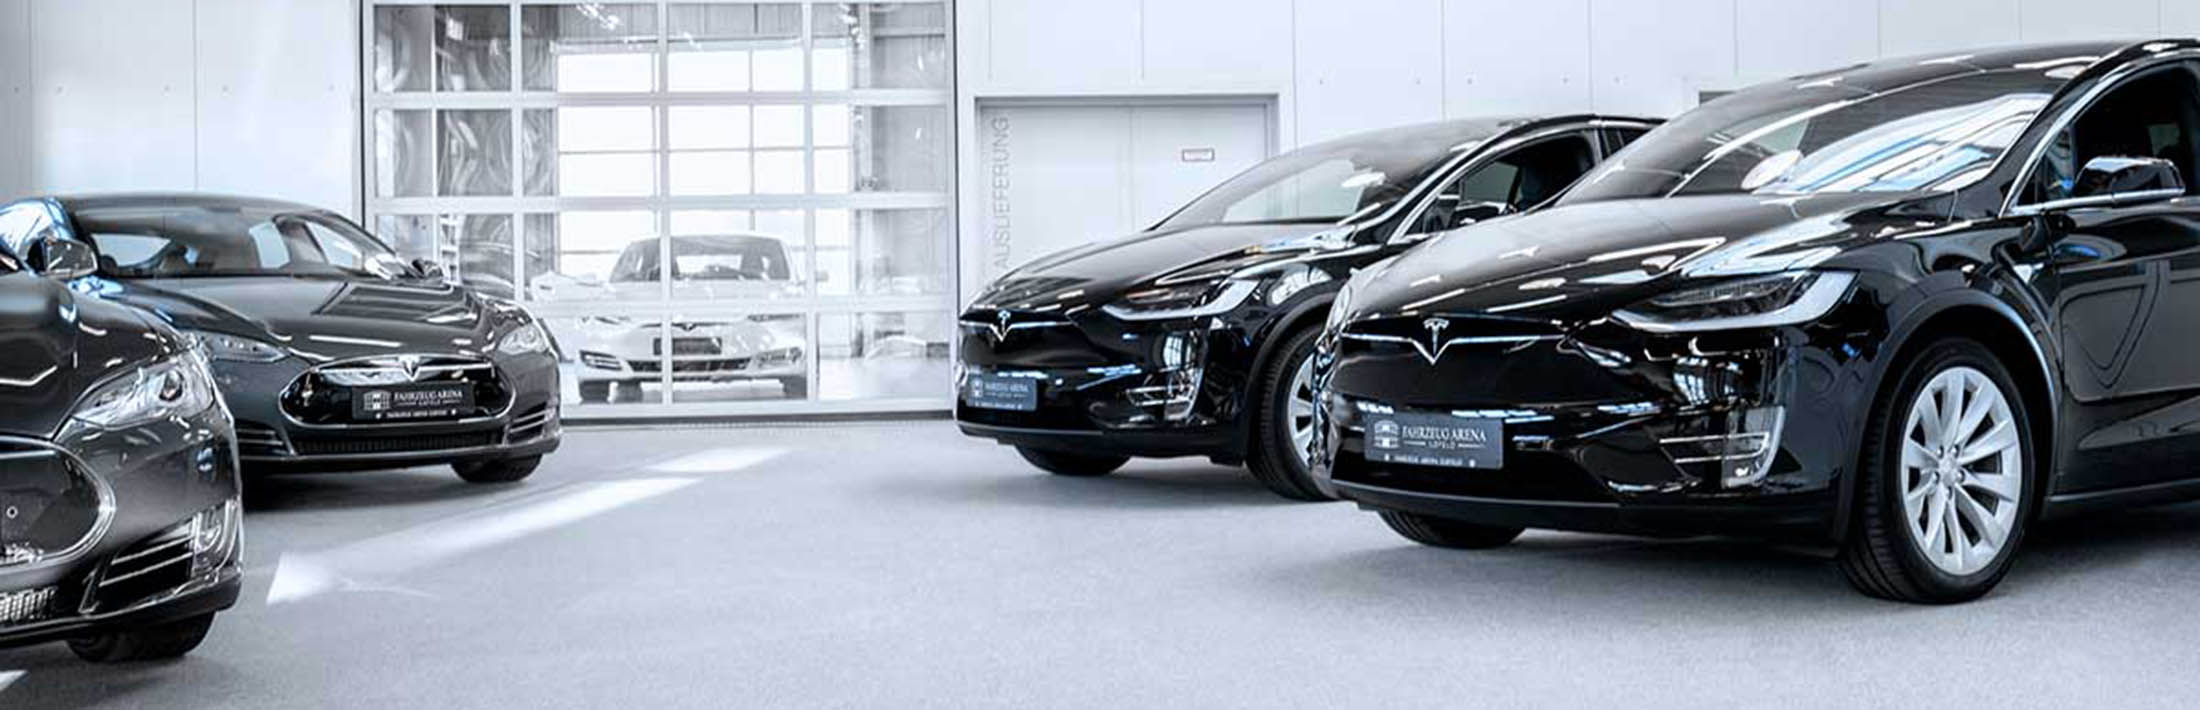 Fahrzeug Arena Ilsfeld GmbH Verschiedene Tesla Modelle in einem Ausstellungsraum